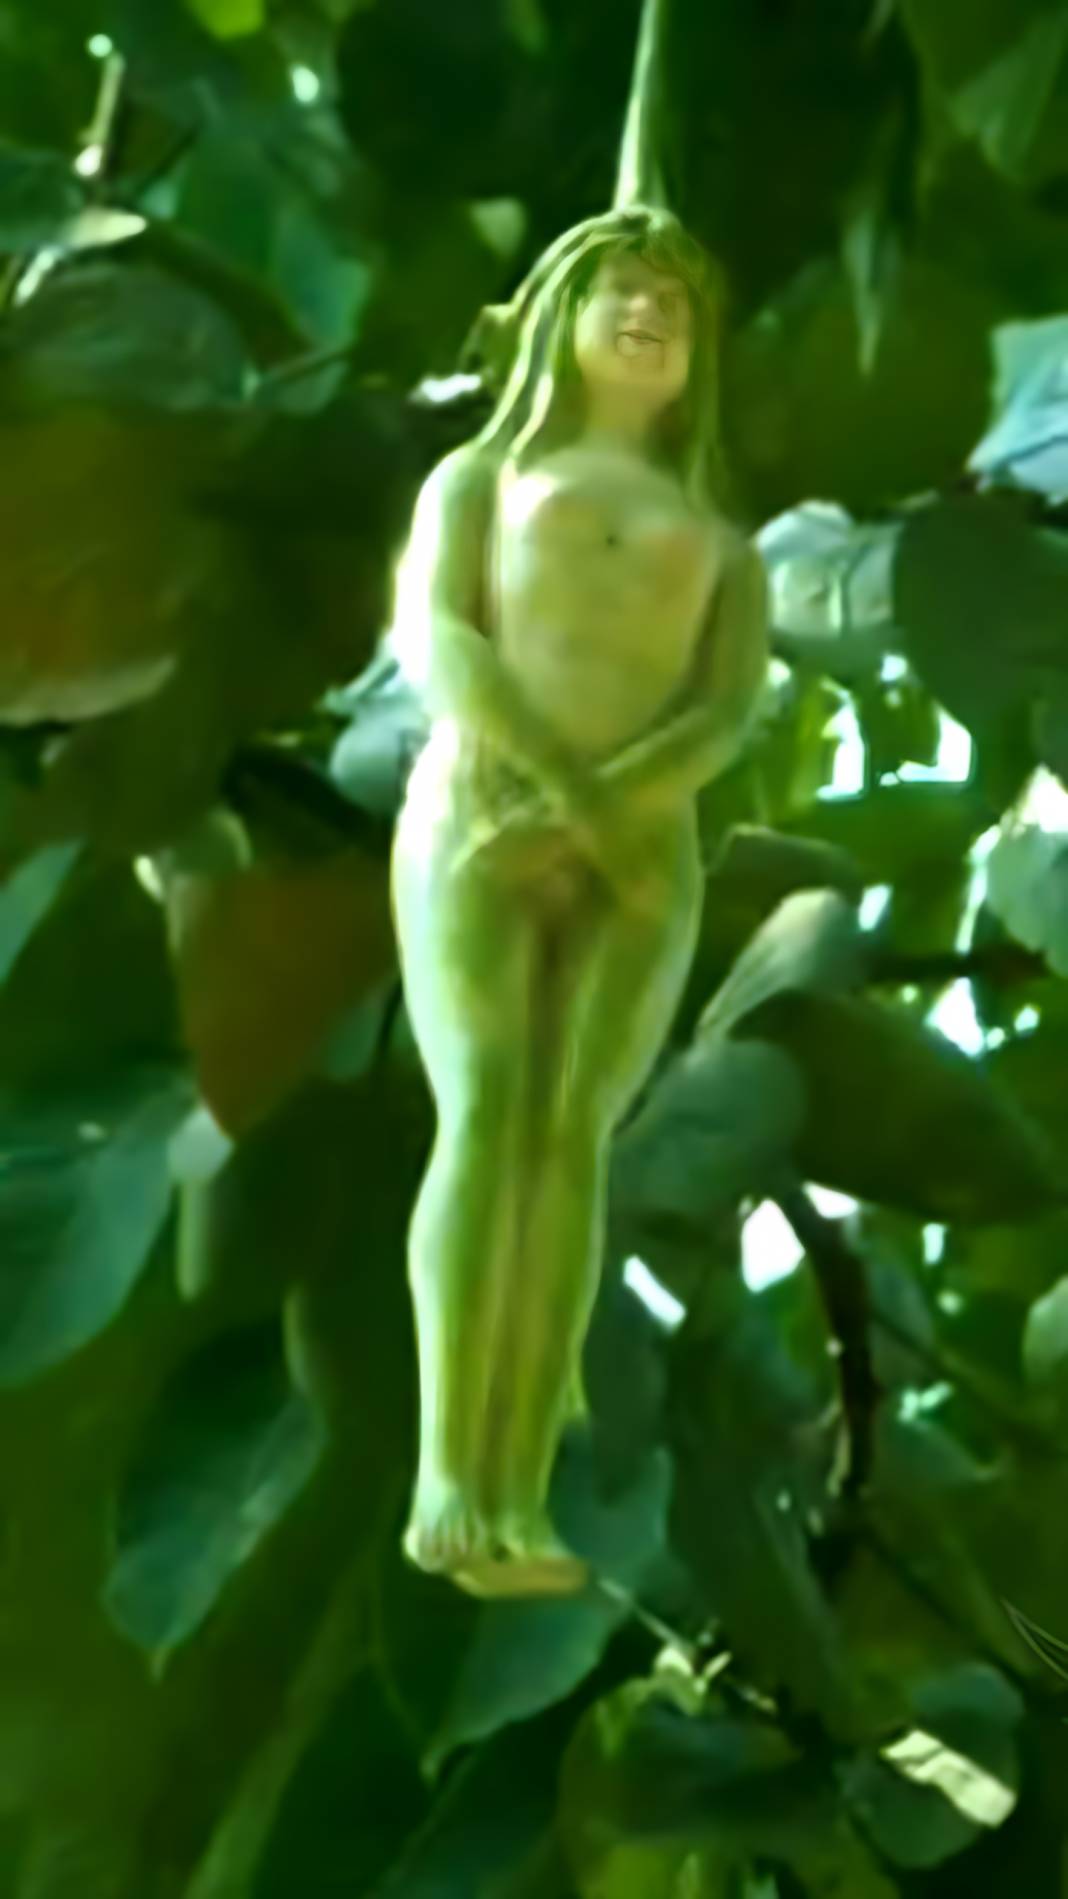 Gizemli Nareepol Ağacı: Meyvesi Kadın Bedenine Benziyor! 2